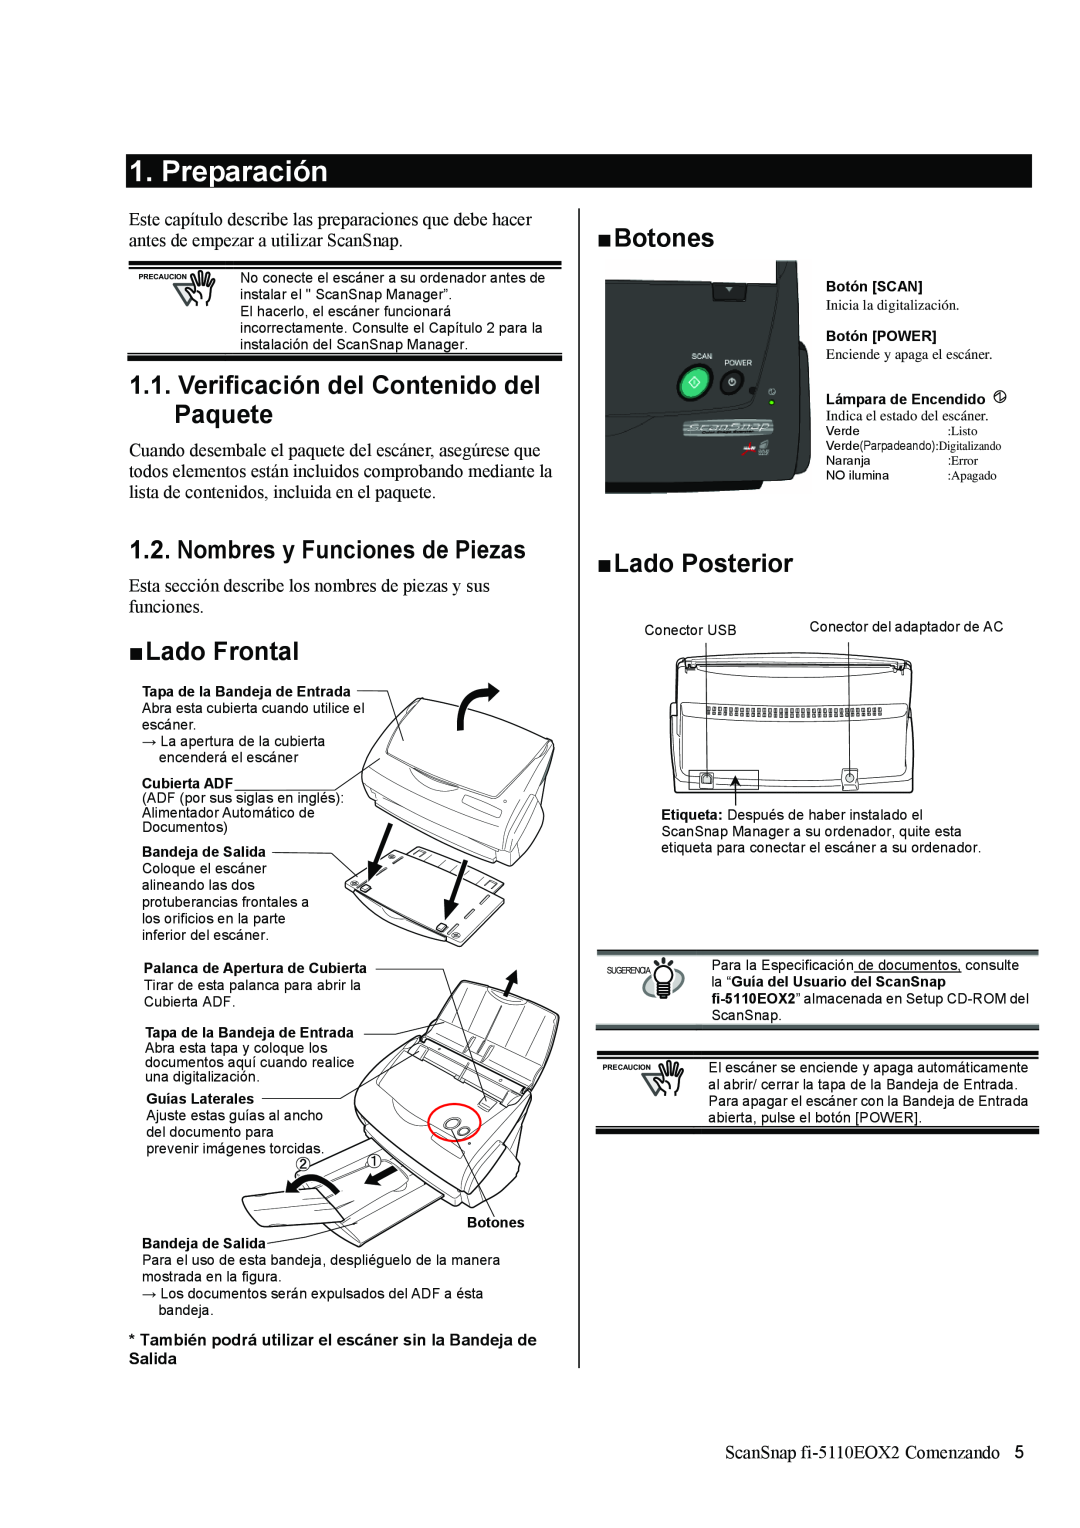 Fujitsu fi-5110EOX2 Preparación, Verificación del Contenido del Paquete, Nombres y Funciones de Piezas, „ Lado Frontal 